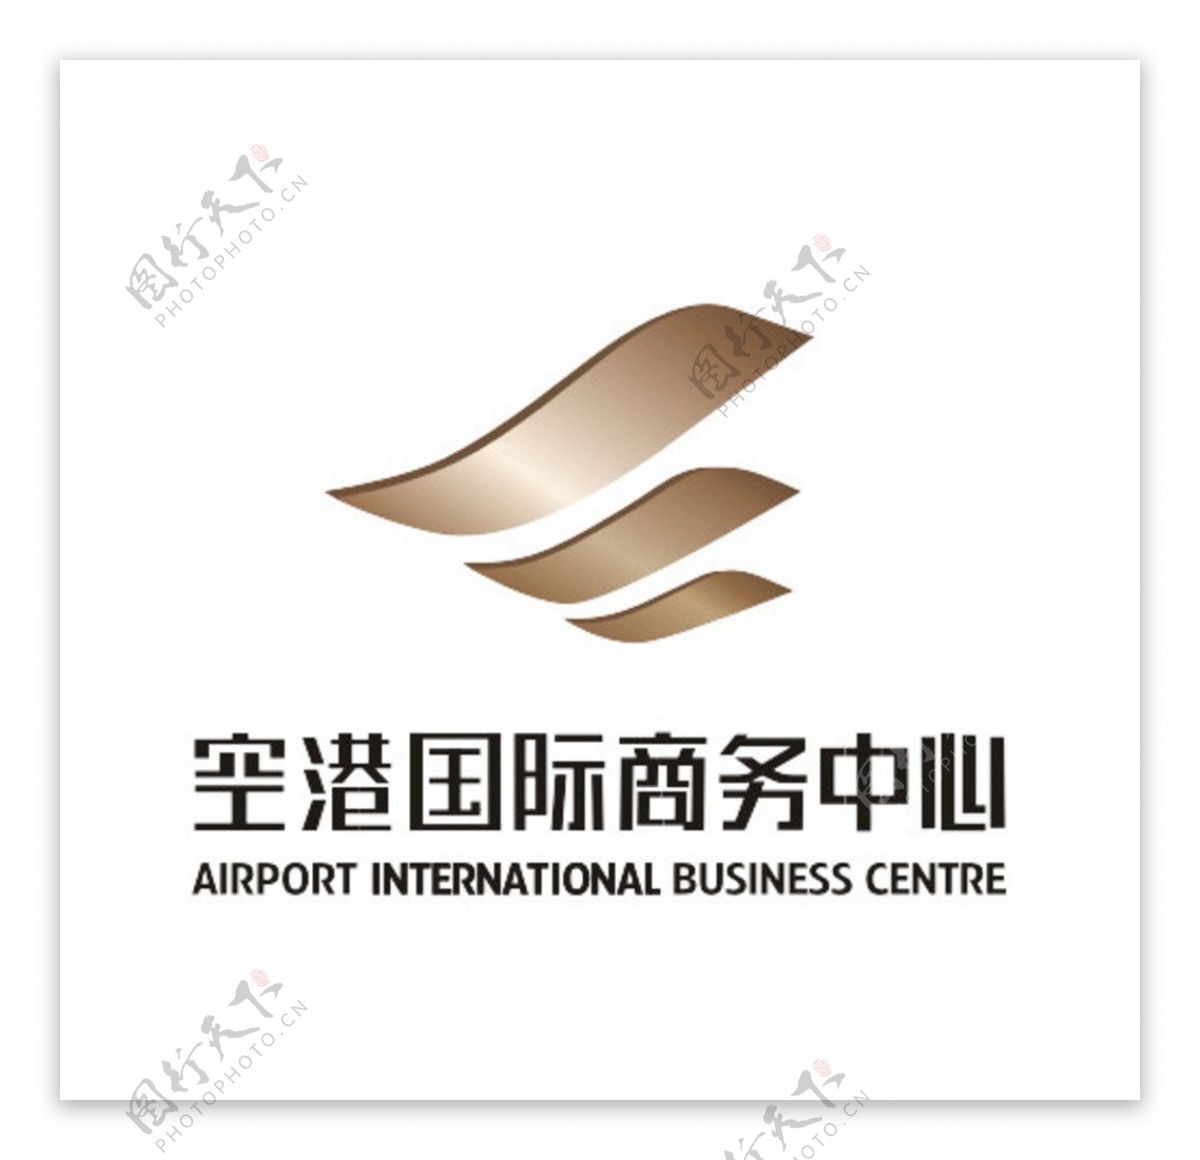 空港国际商务中心标志logo